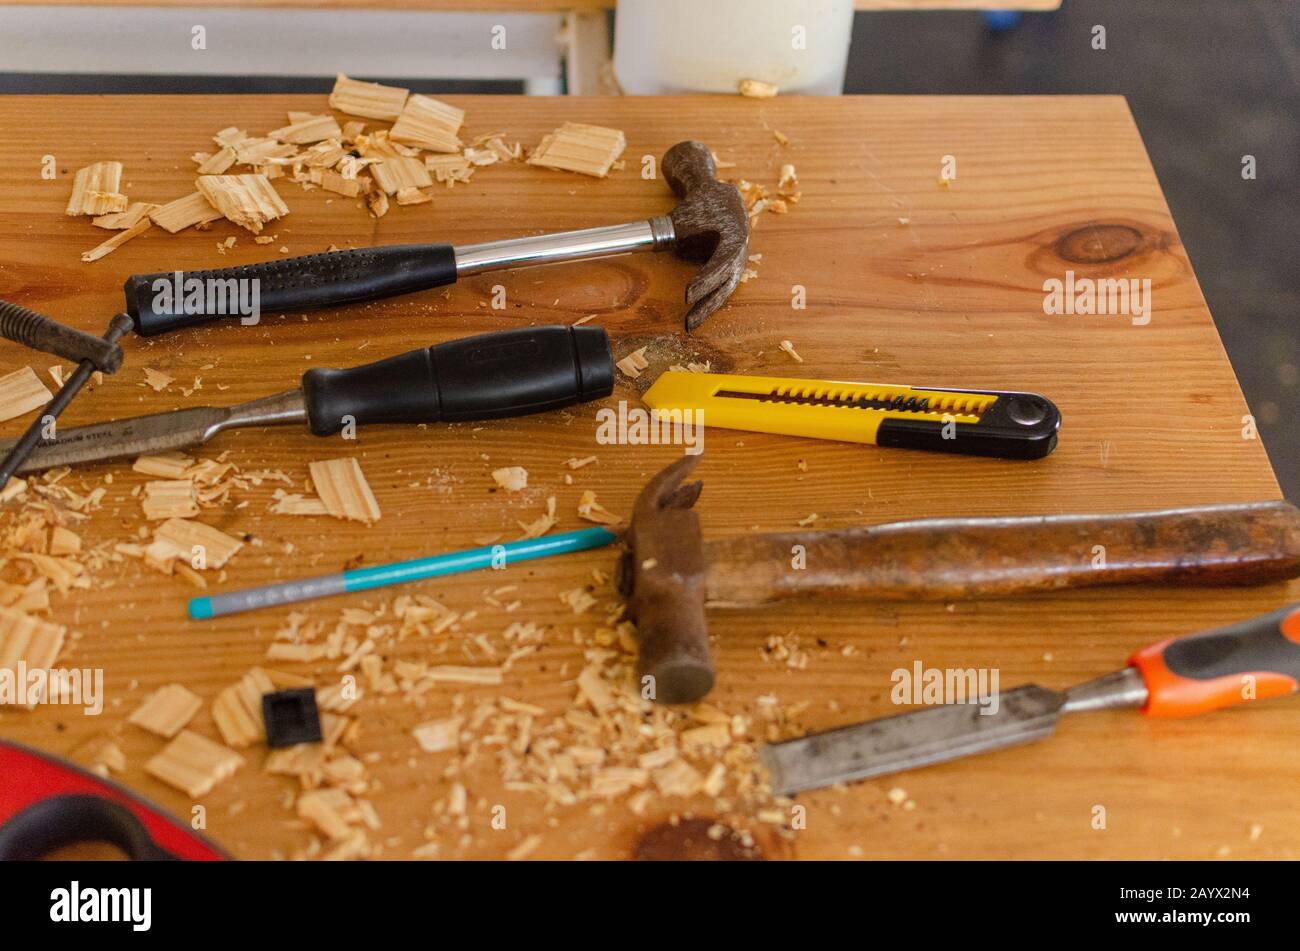 Marteaux, burin, cutter, crayon maintenu sur une table désordonnée remplie de copeaux de bois de déchets. Certains outils utilisés dans l'atelier de travail du bois. Banque D'Images